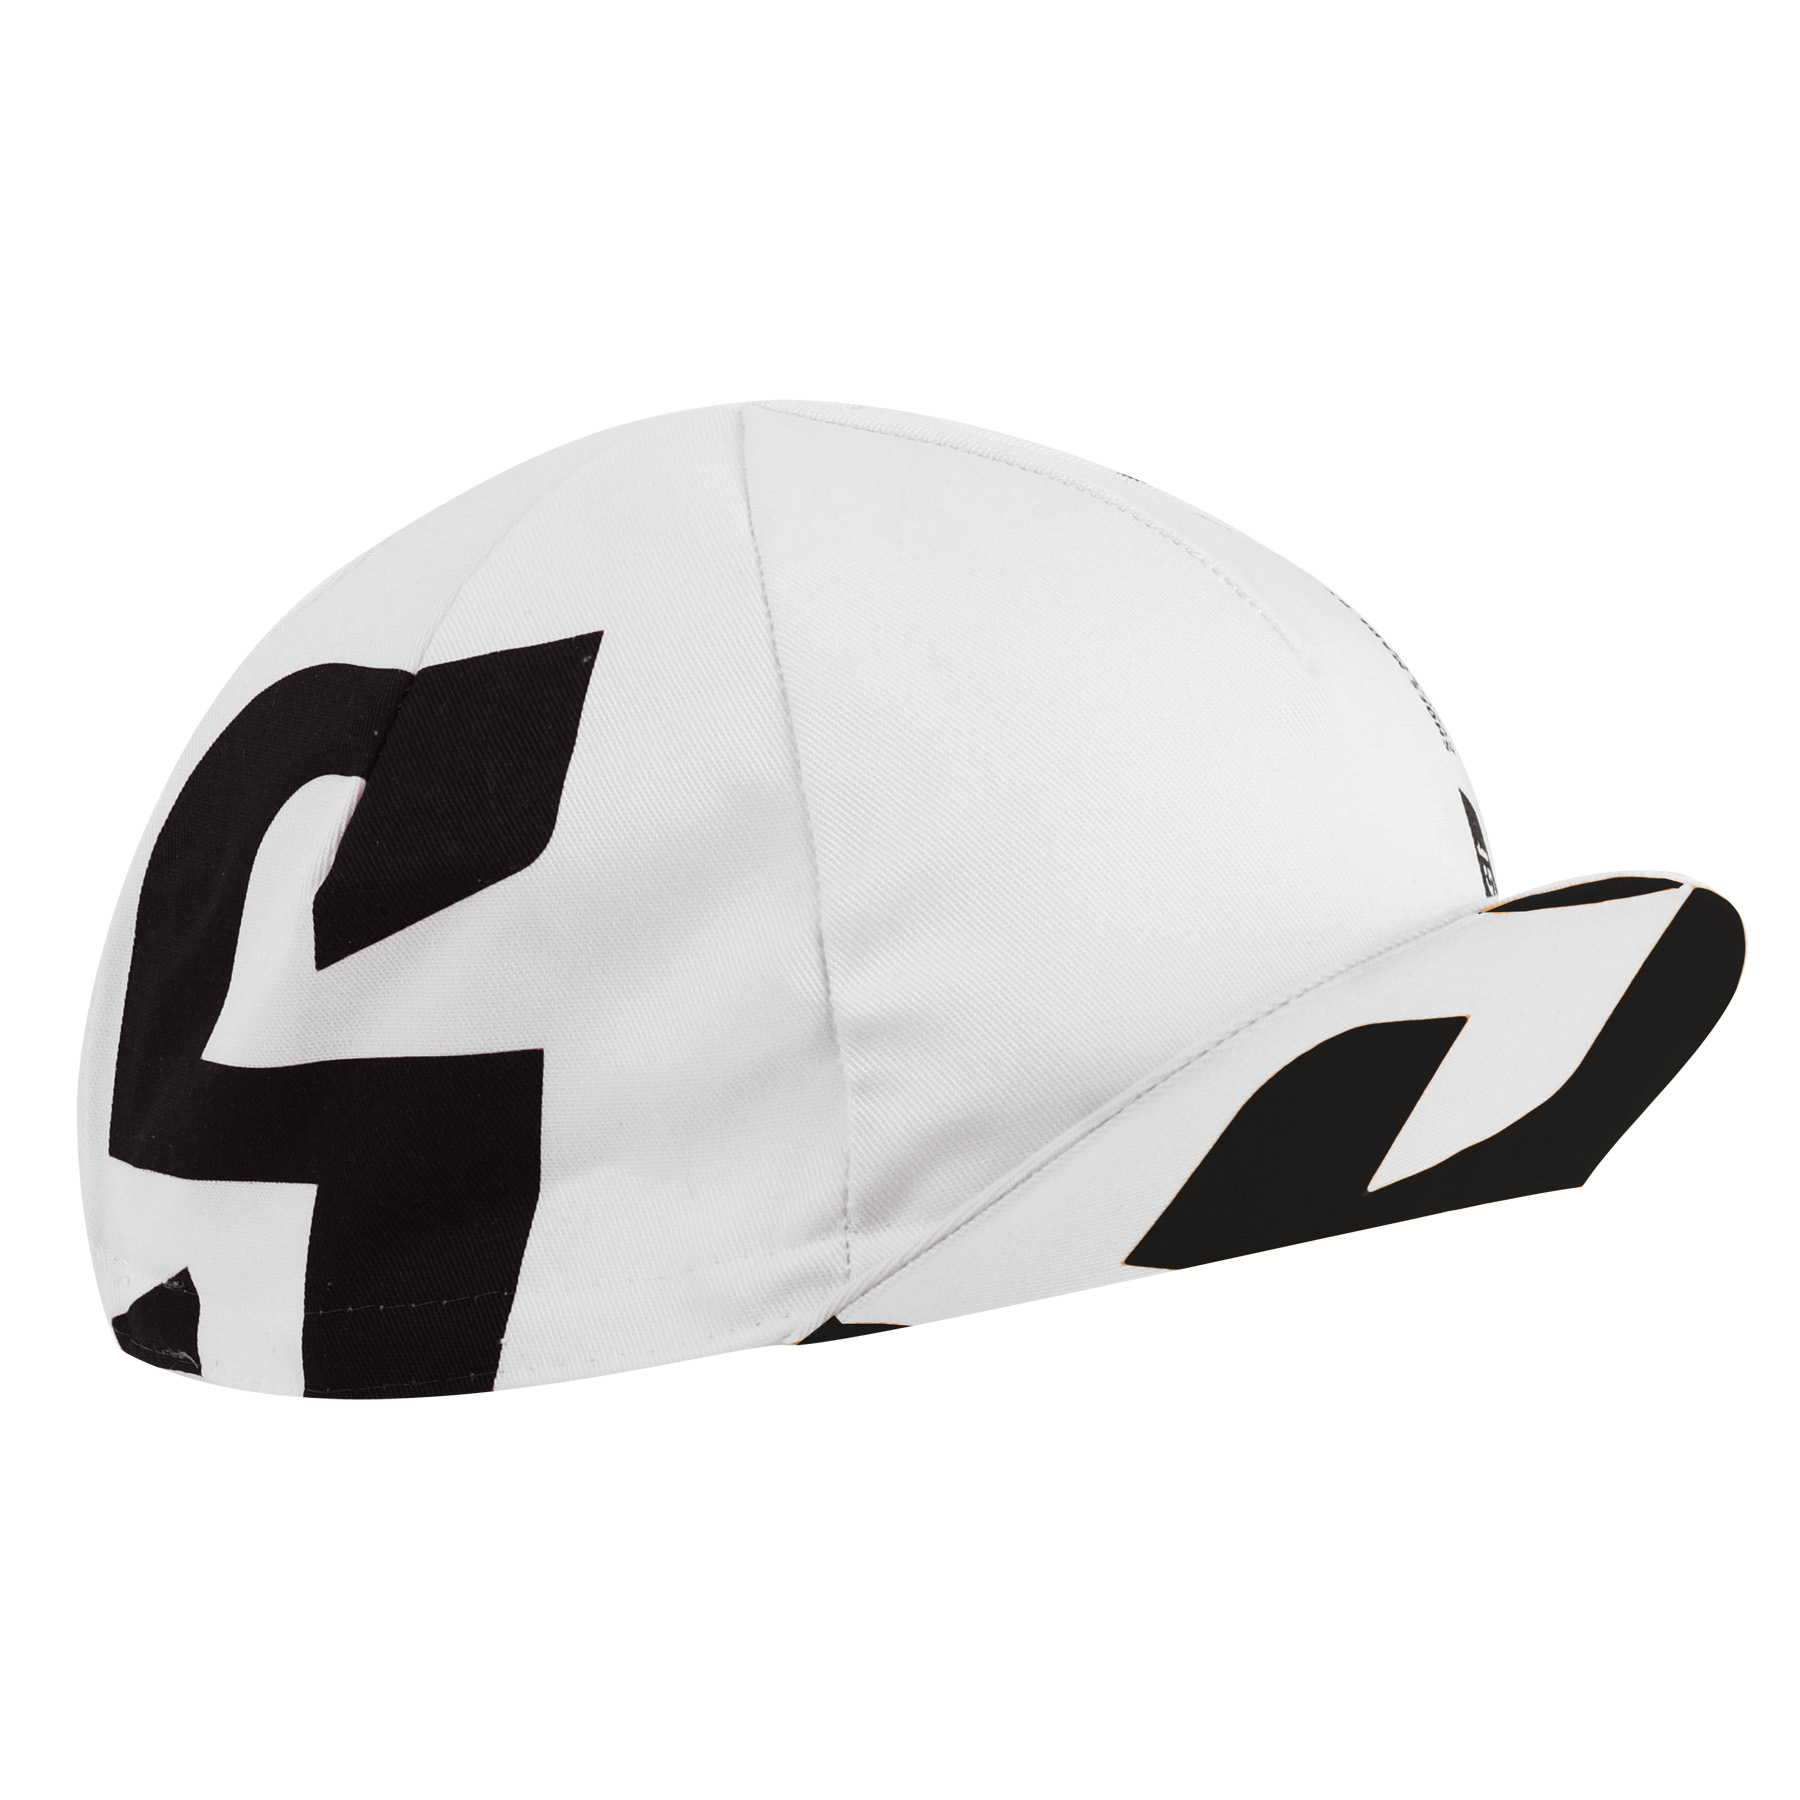 Produktbild von Suplest Racing Cap - white/black logo 05.065.